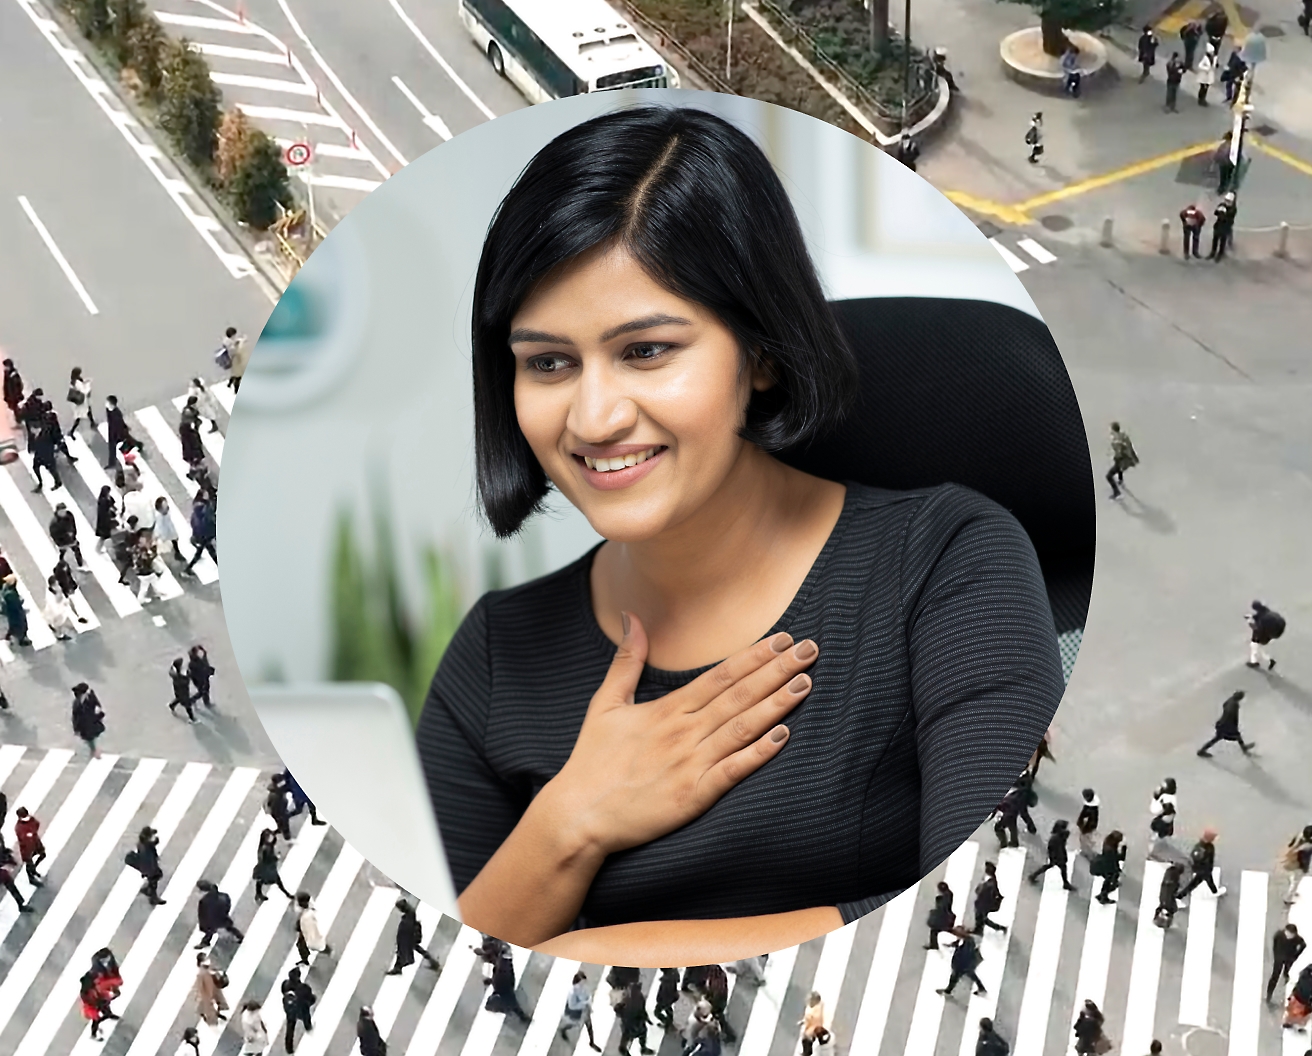 Μια γυναίκα που κρατά το χέρι της στο σεντούκι της ενώ εργάζεται στον φορητό υπολογιστή της, η εικόνα φόντου ορίζεται ως διασταύρωση δρόμου με άτομα που περνούν